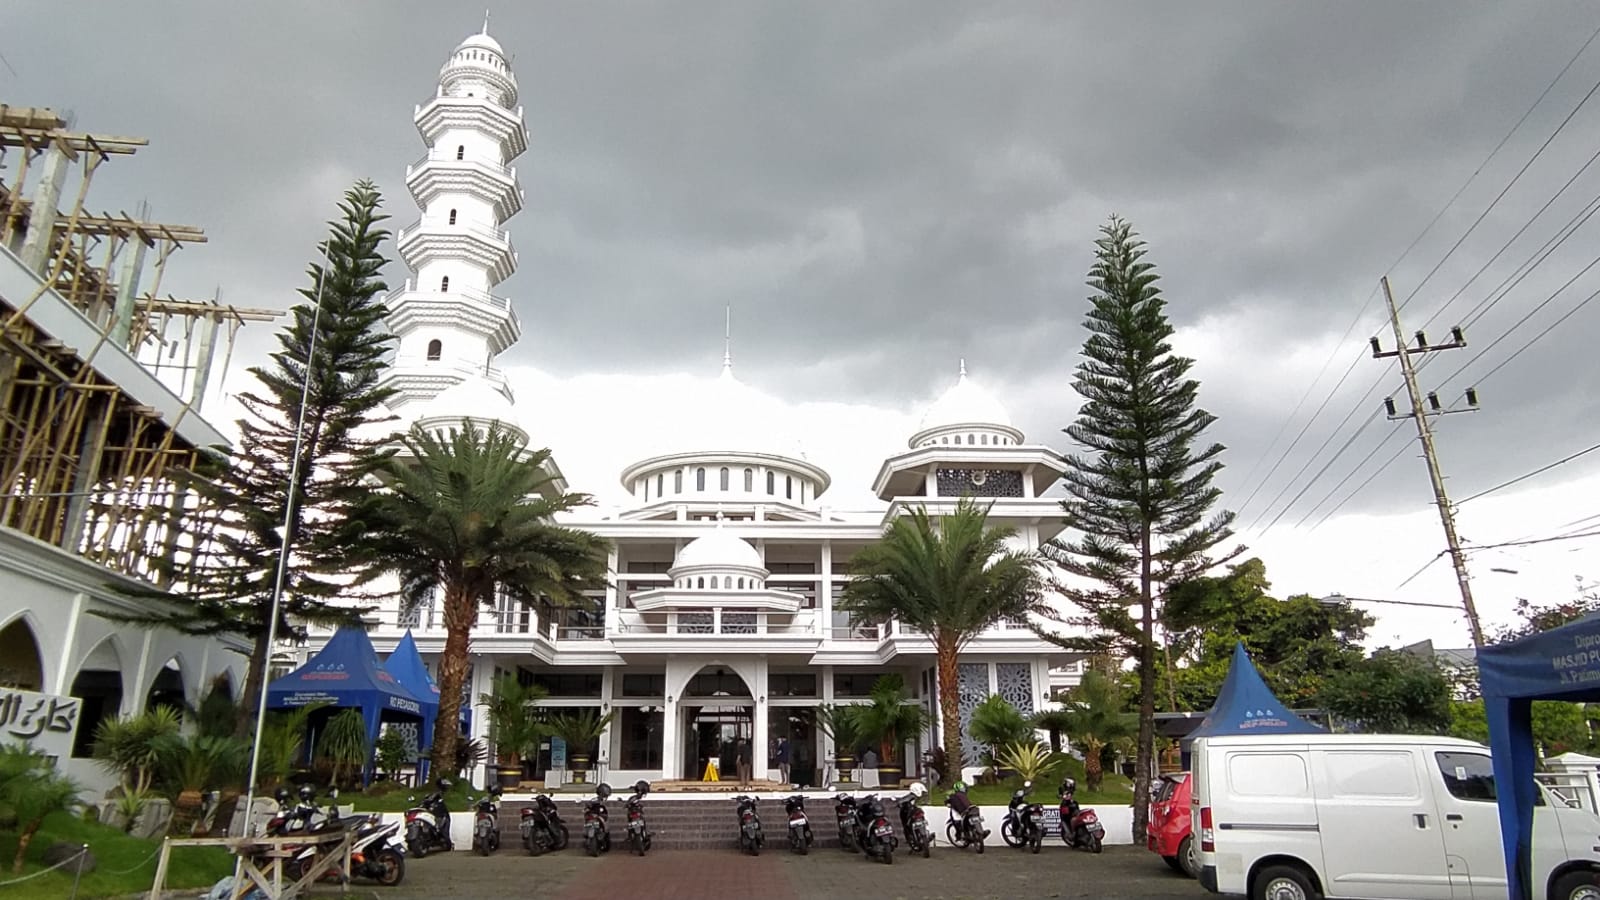 Masjid Putih Darussholihin, masjid yang pernah viral karena memampang reklame besar bahwa 'Masjid Ini Dijual'.